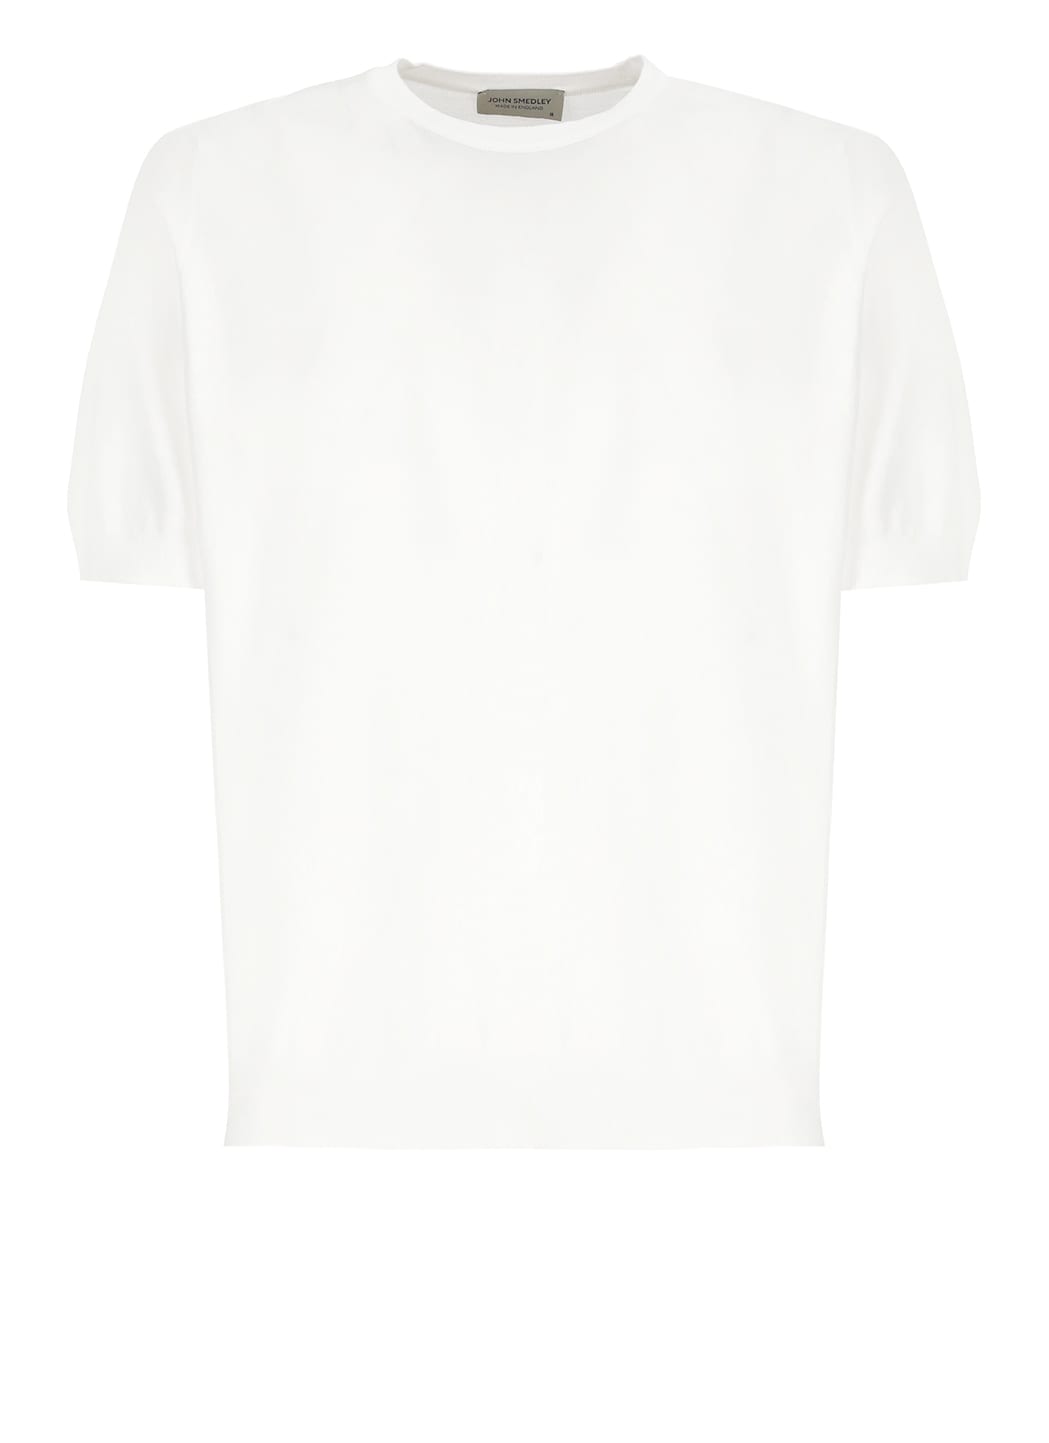 Kempton T-shirt